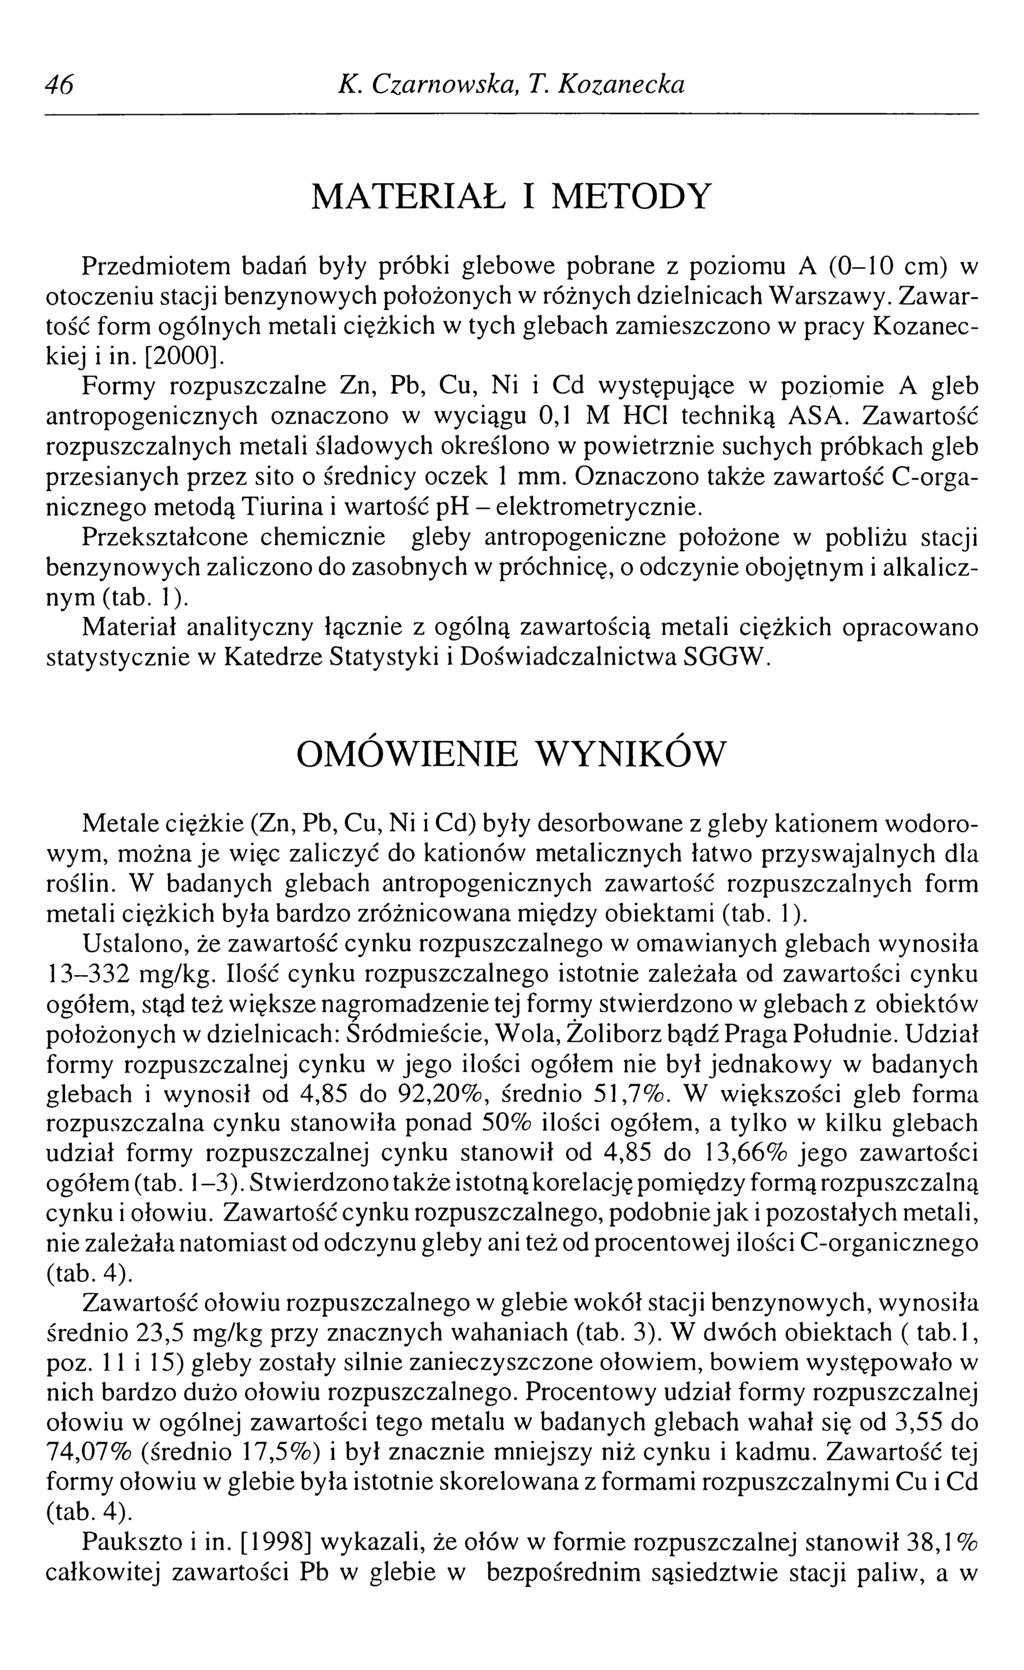 46 К. Czarnowska, T. Kozanecka MATERIAŁ I METODY Przedmiotem badań były próbki glebowe pobrane z poziomu A (0-10 cm) w otoczeniu stacji benzynowych położonych w różnych dzielnicach Warszawy.